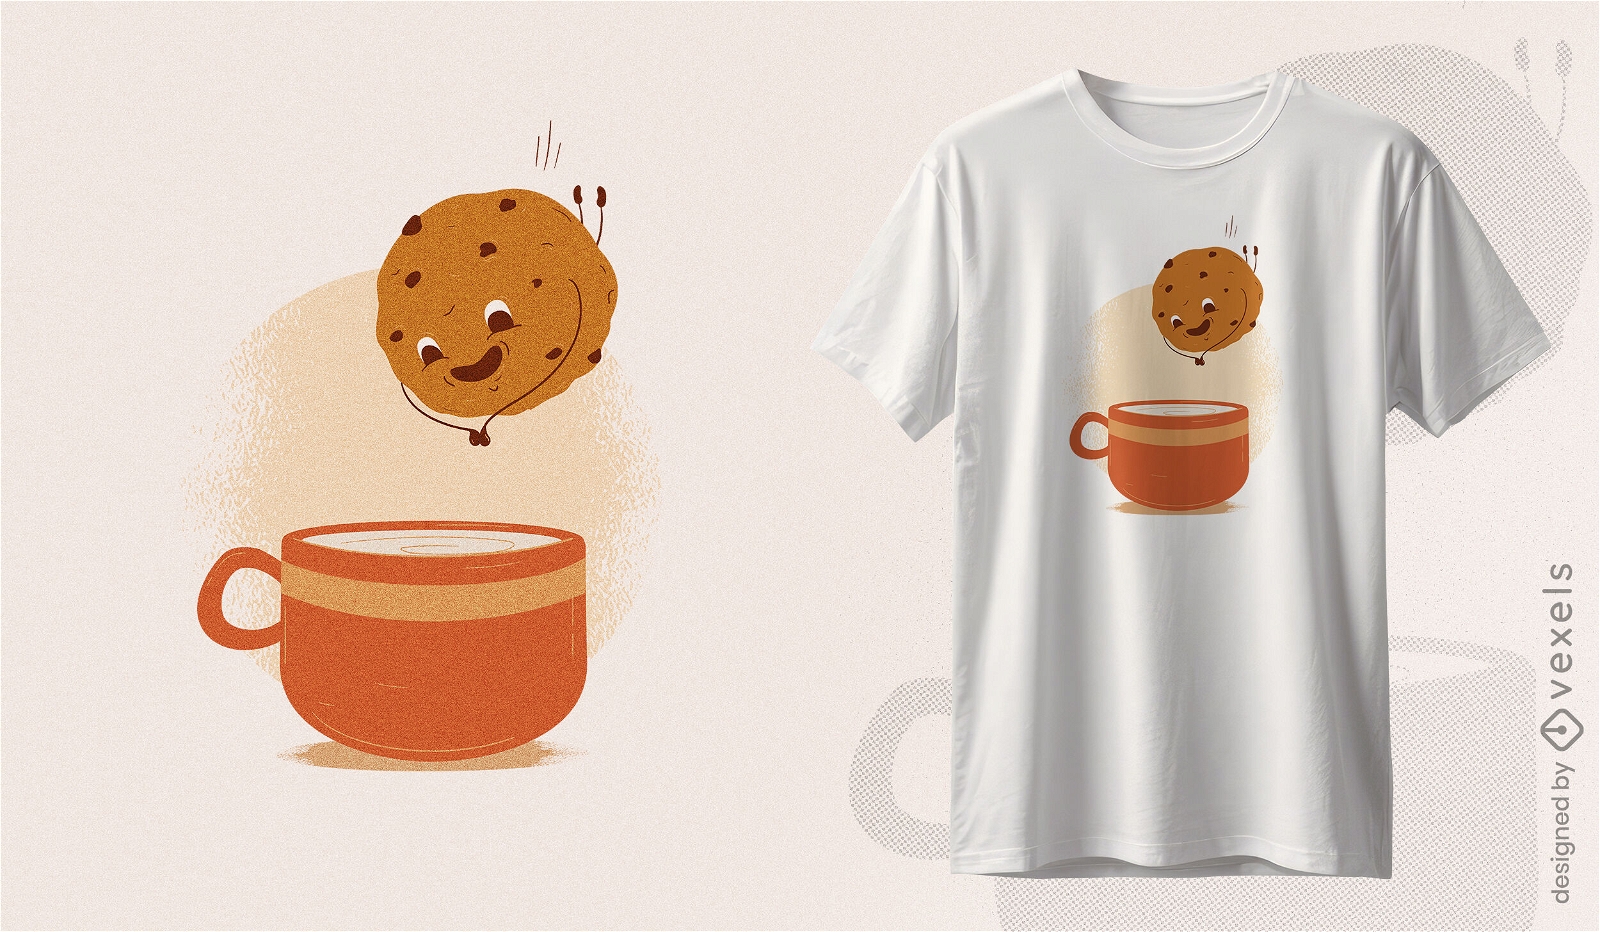 Gem?tliches Pl?tzchen- und Kaffee-T-Shirt-Design